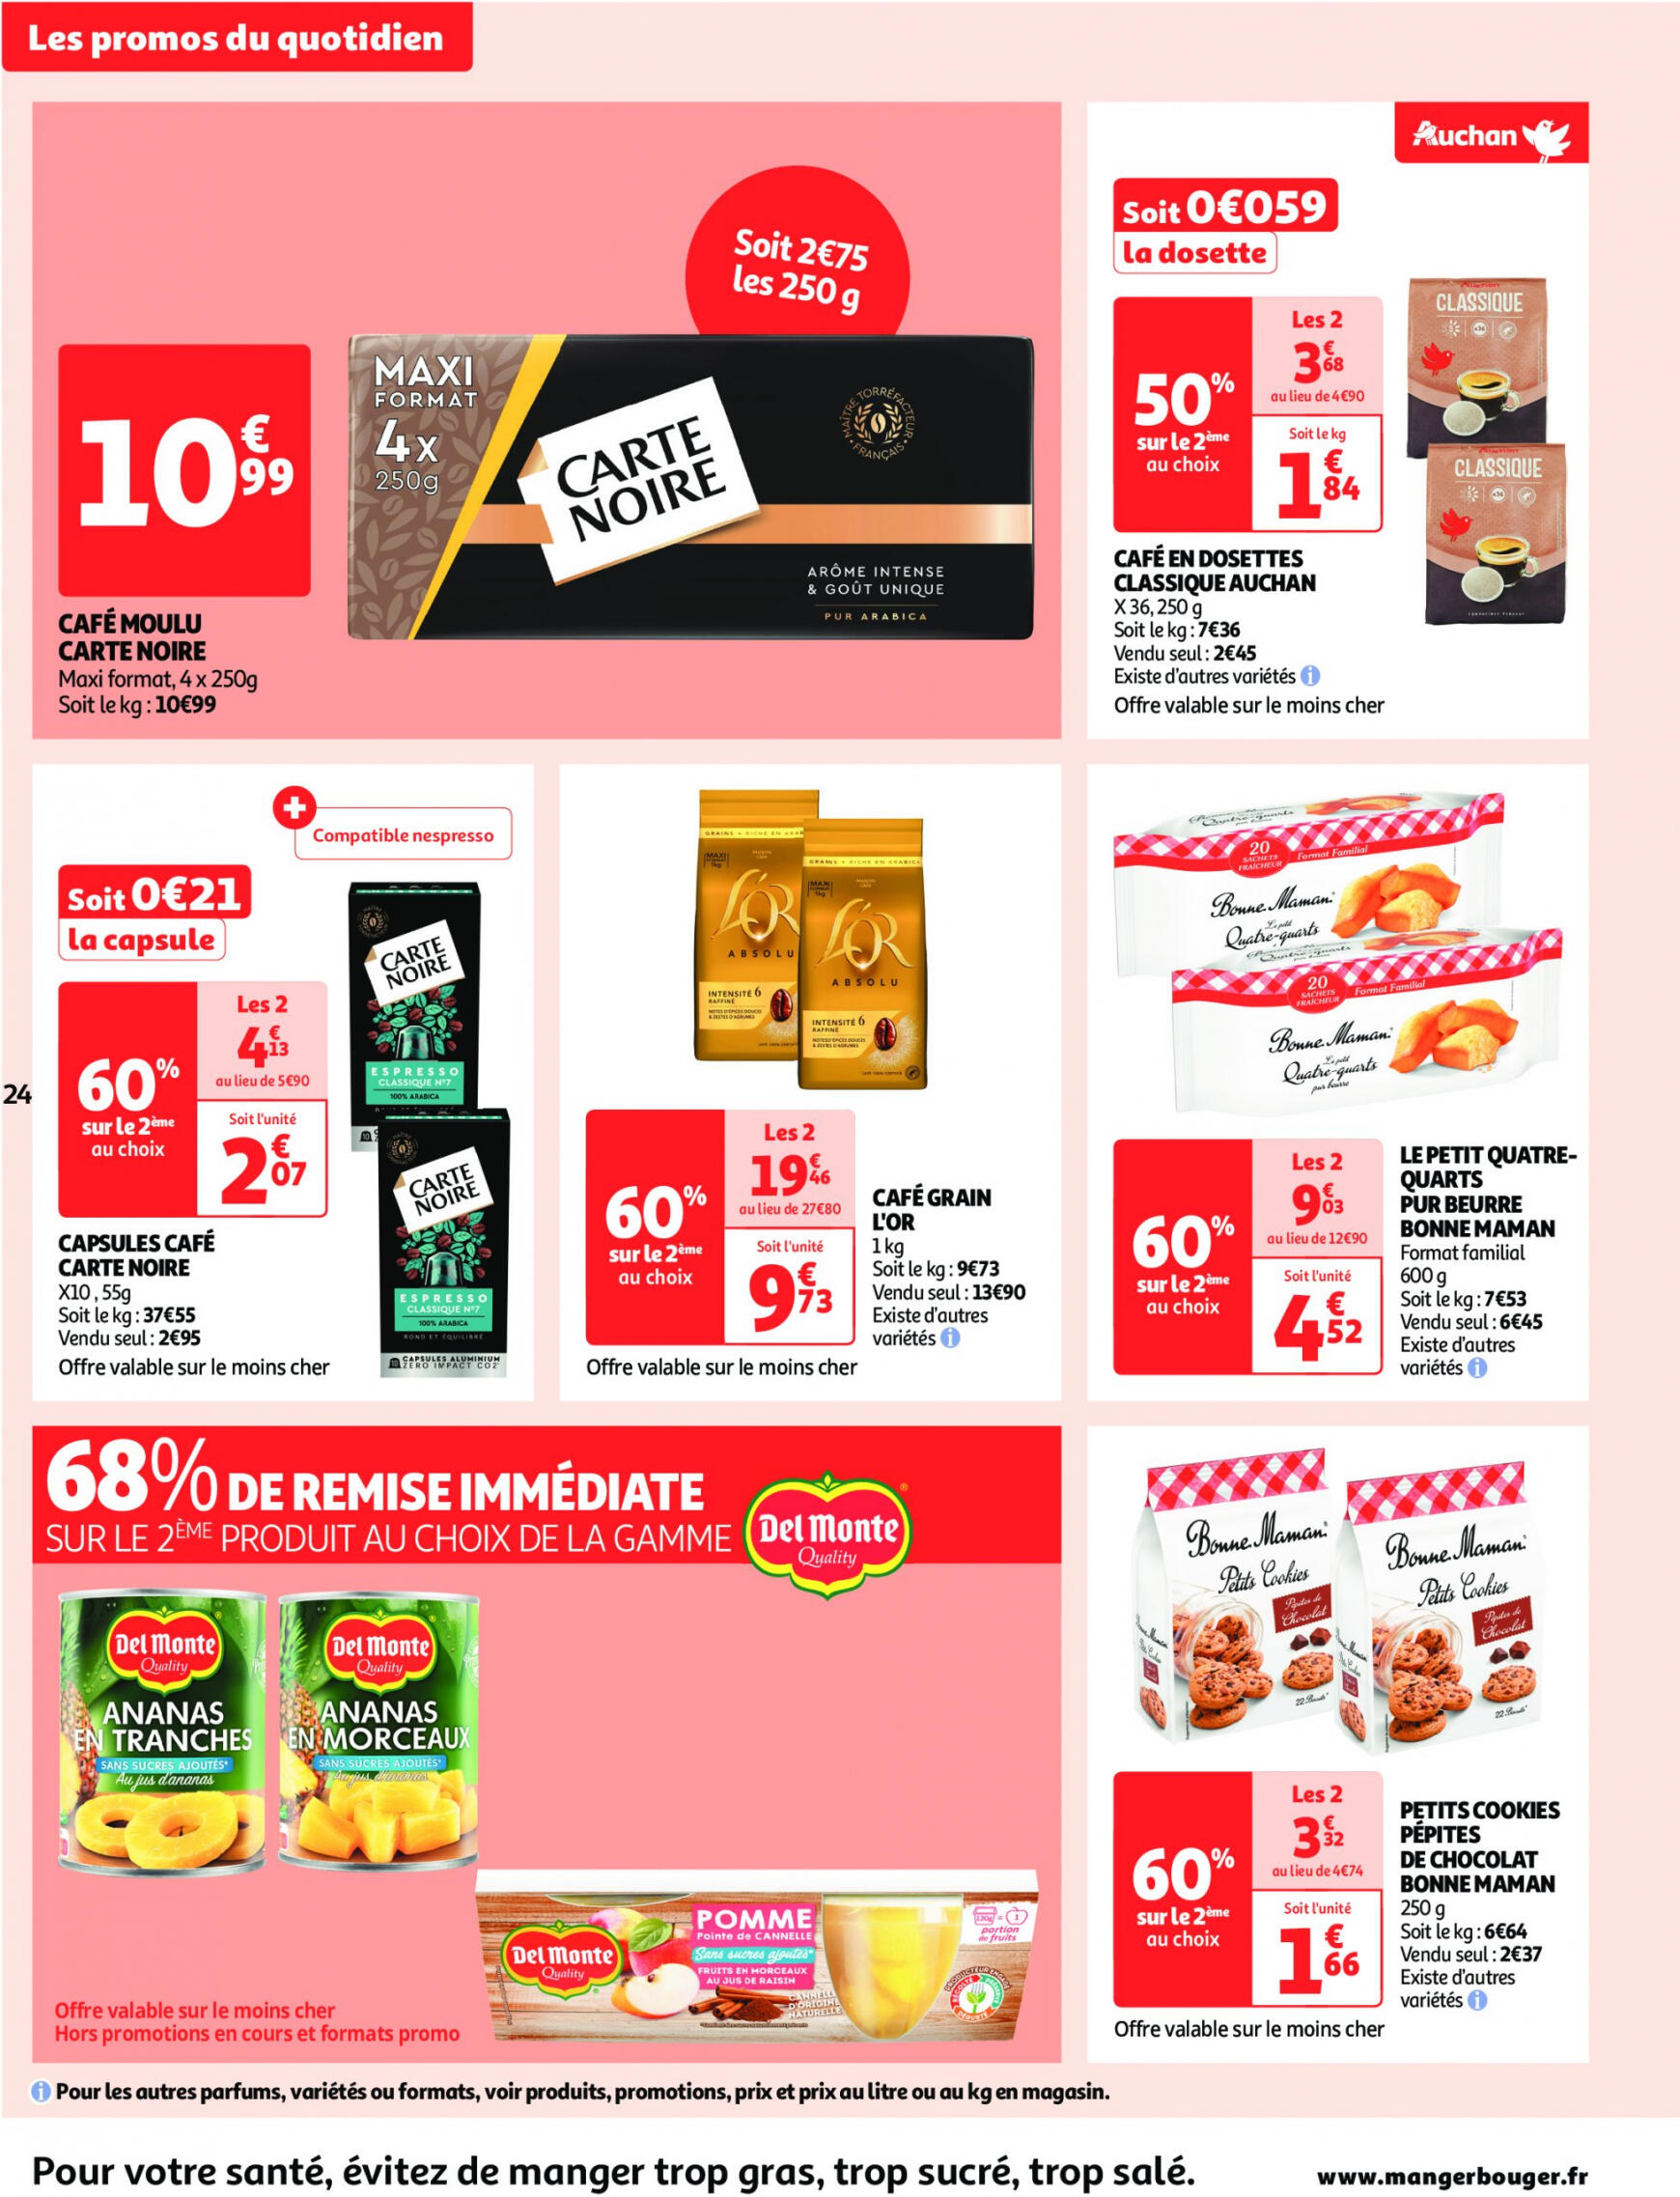 auchan - Auchan supermarché - Faites le plein de bonnes affaires folder huidig 22.05. - 26.05. - page: 24